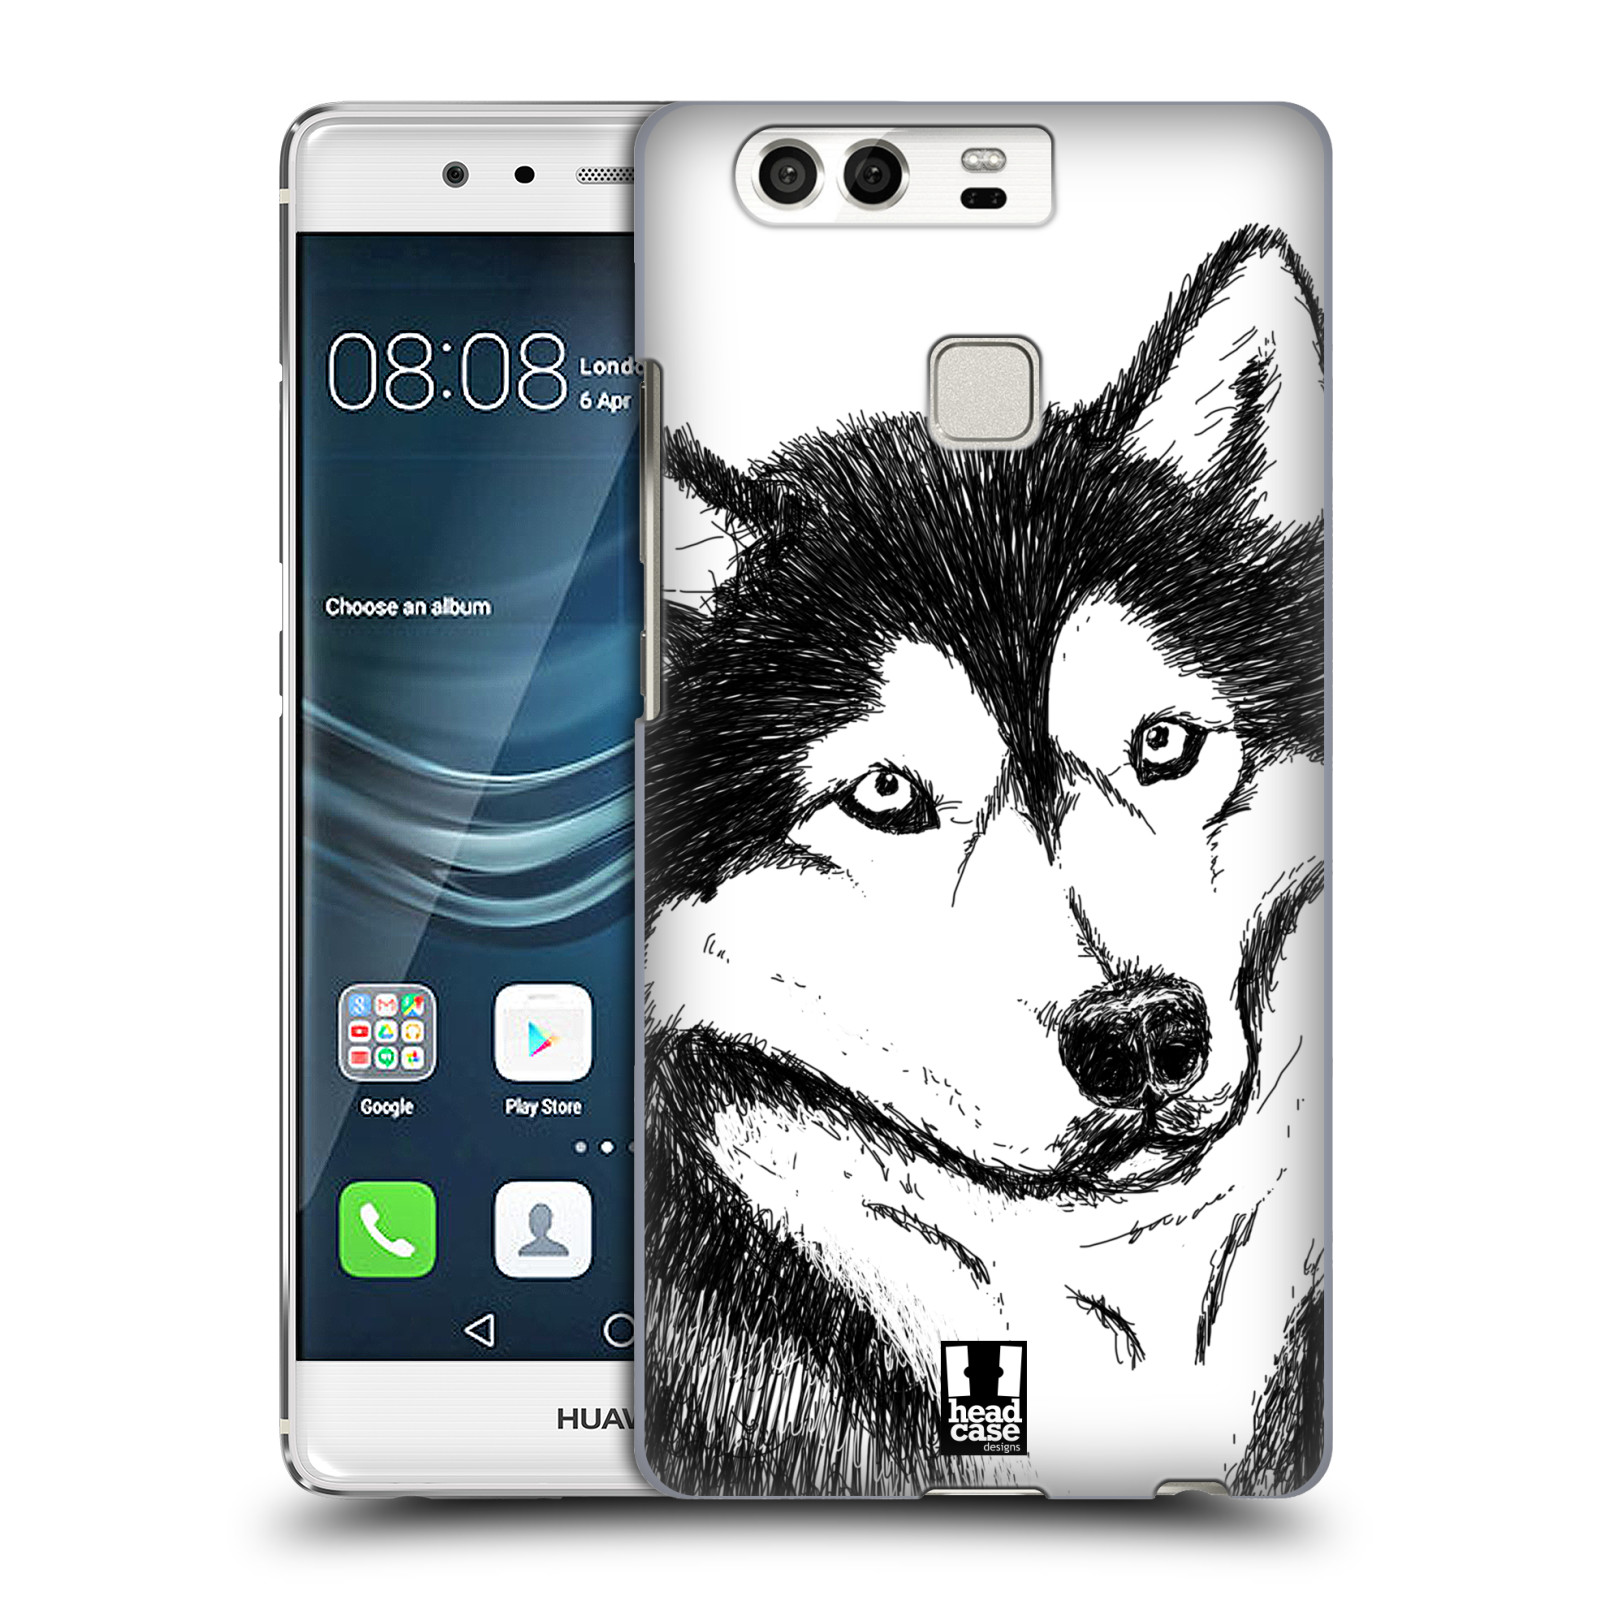 HEAD CASE plastový obal na mobil Huawei P9 / P9 DUAL SIM vzor Kreslená zvířátka černá a bílá pes husky